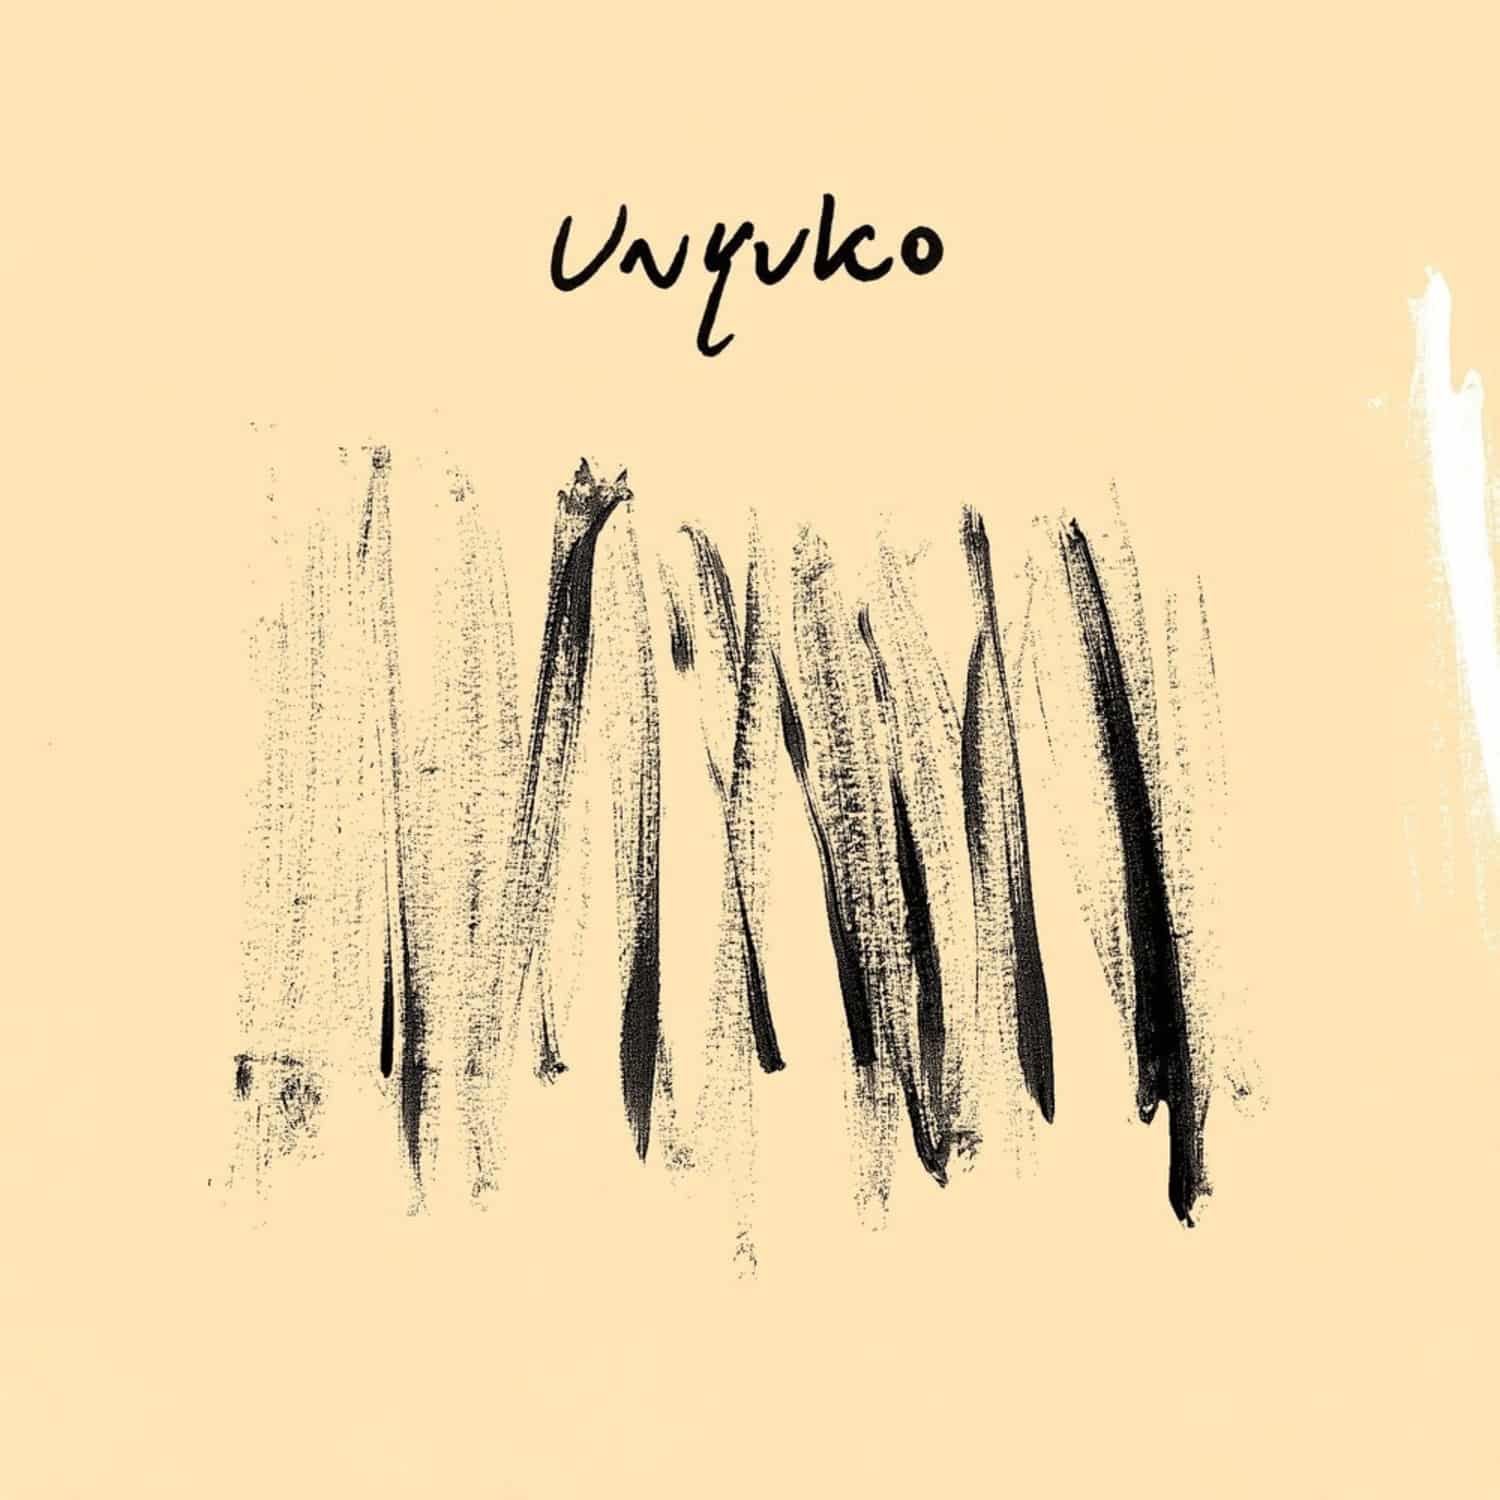 Unyuko - UNYUKO